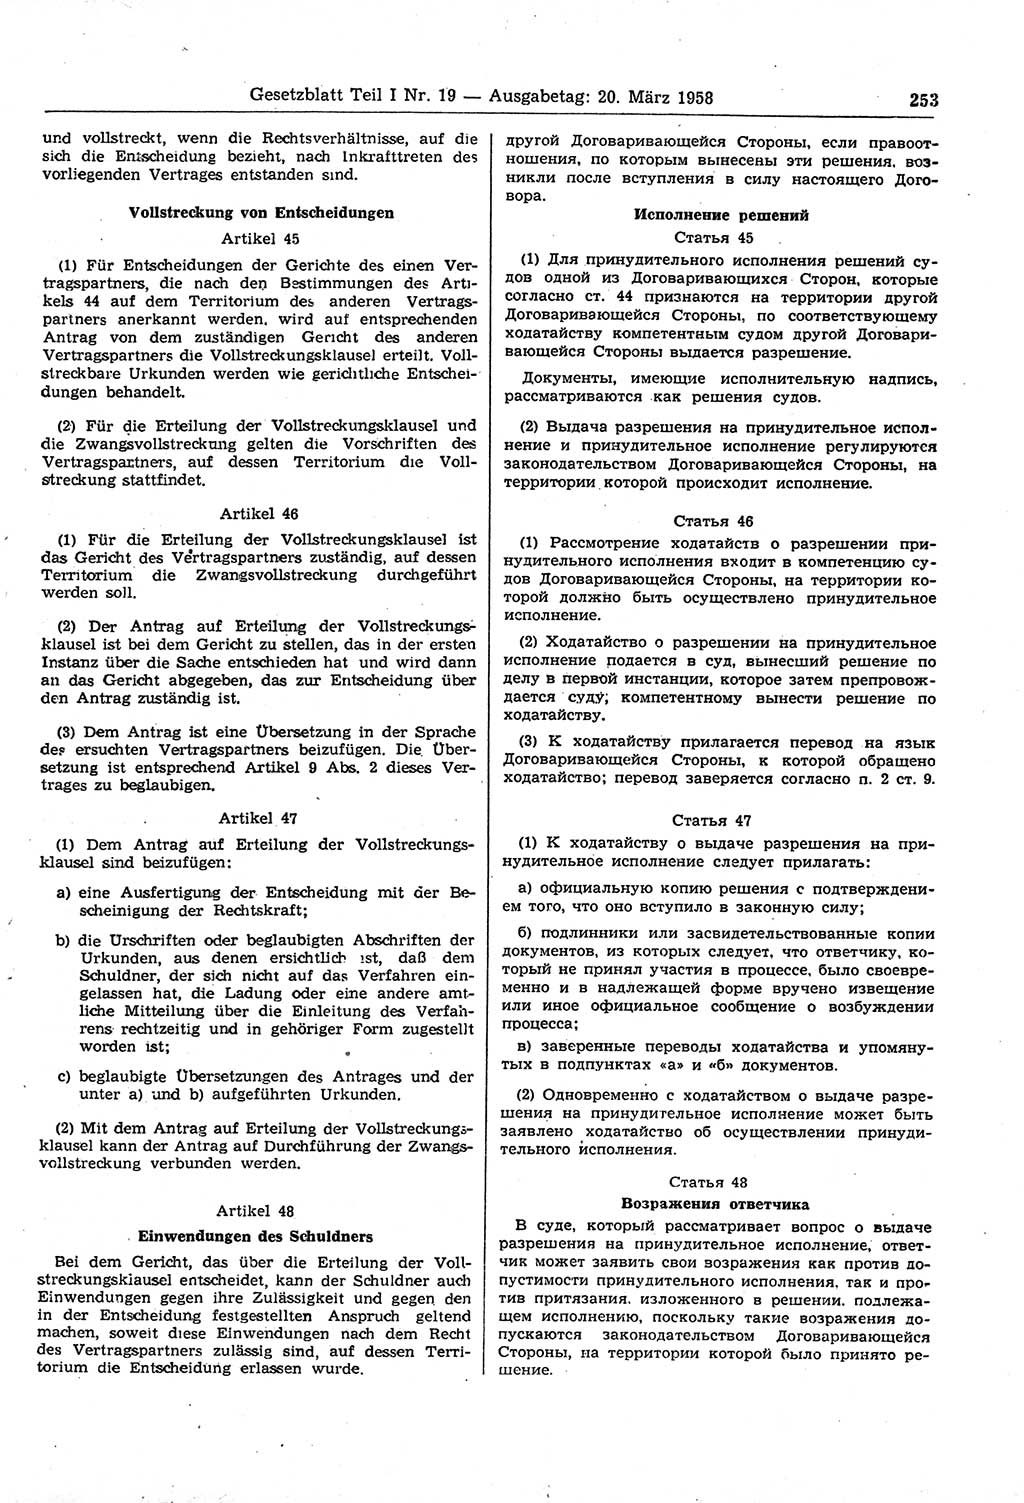 Gesetzblatt (GBl.) der Deutschen Demokratischen Republik (DDR) Teil Ⅰ 1958, Seite 253 (GBl. DDR Ⅰ 1958, S. 253)